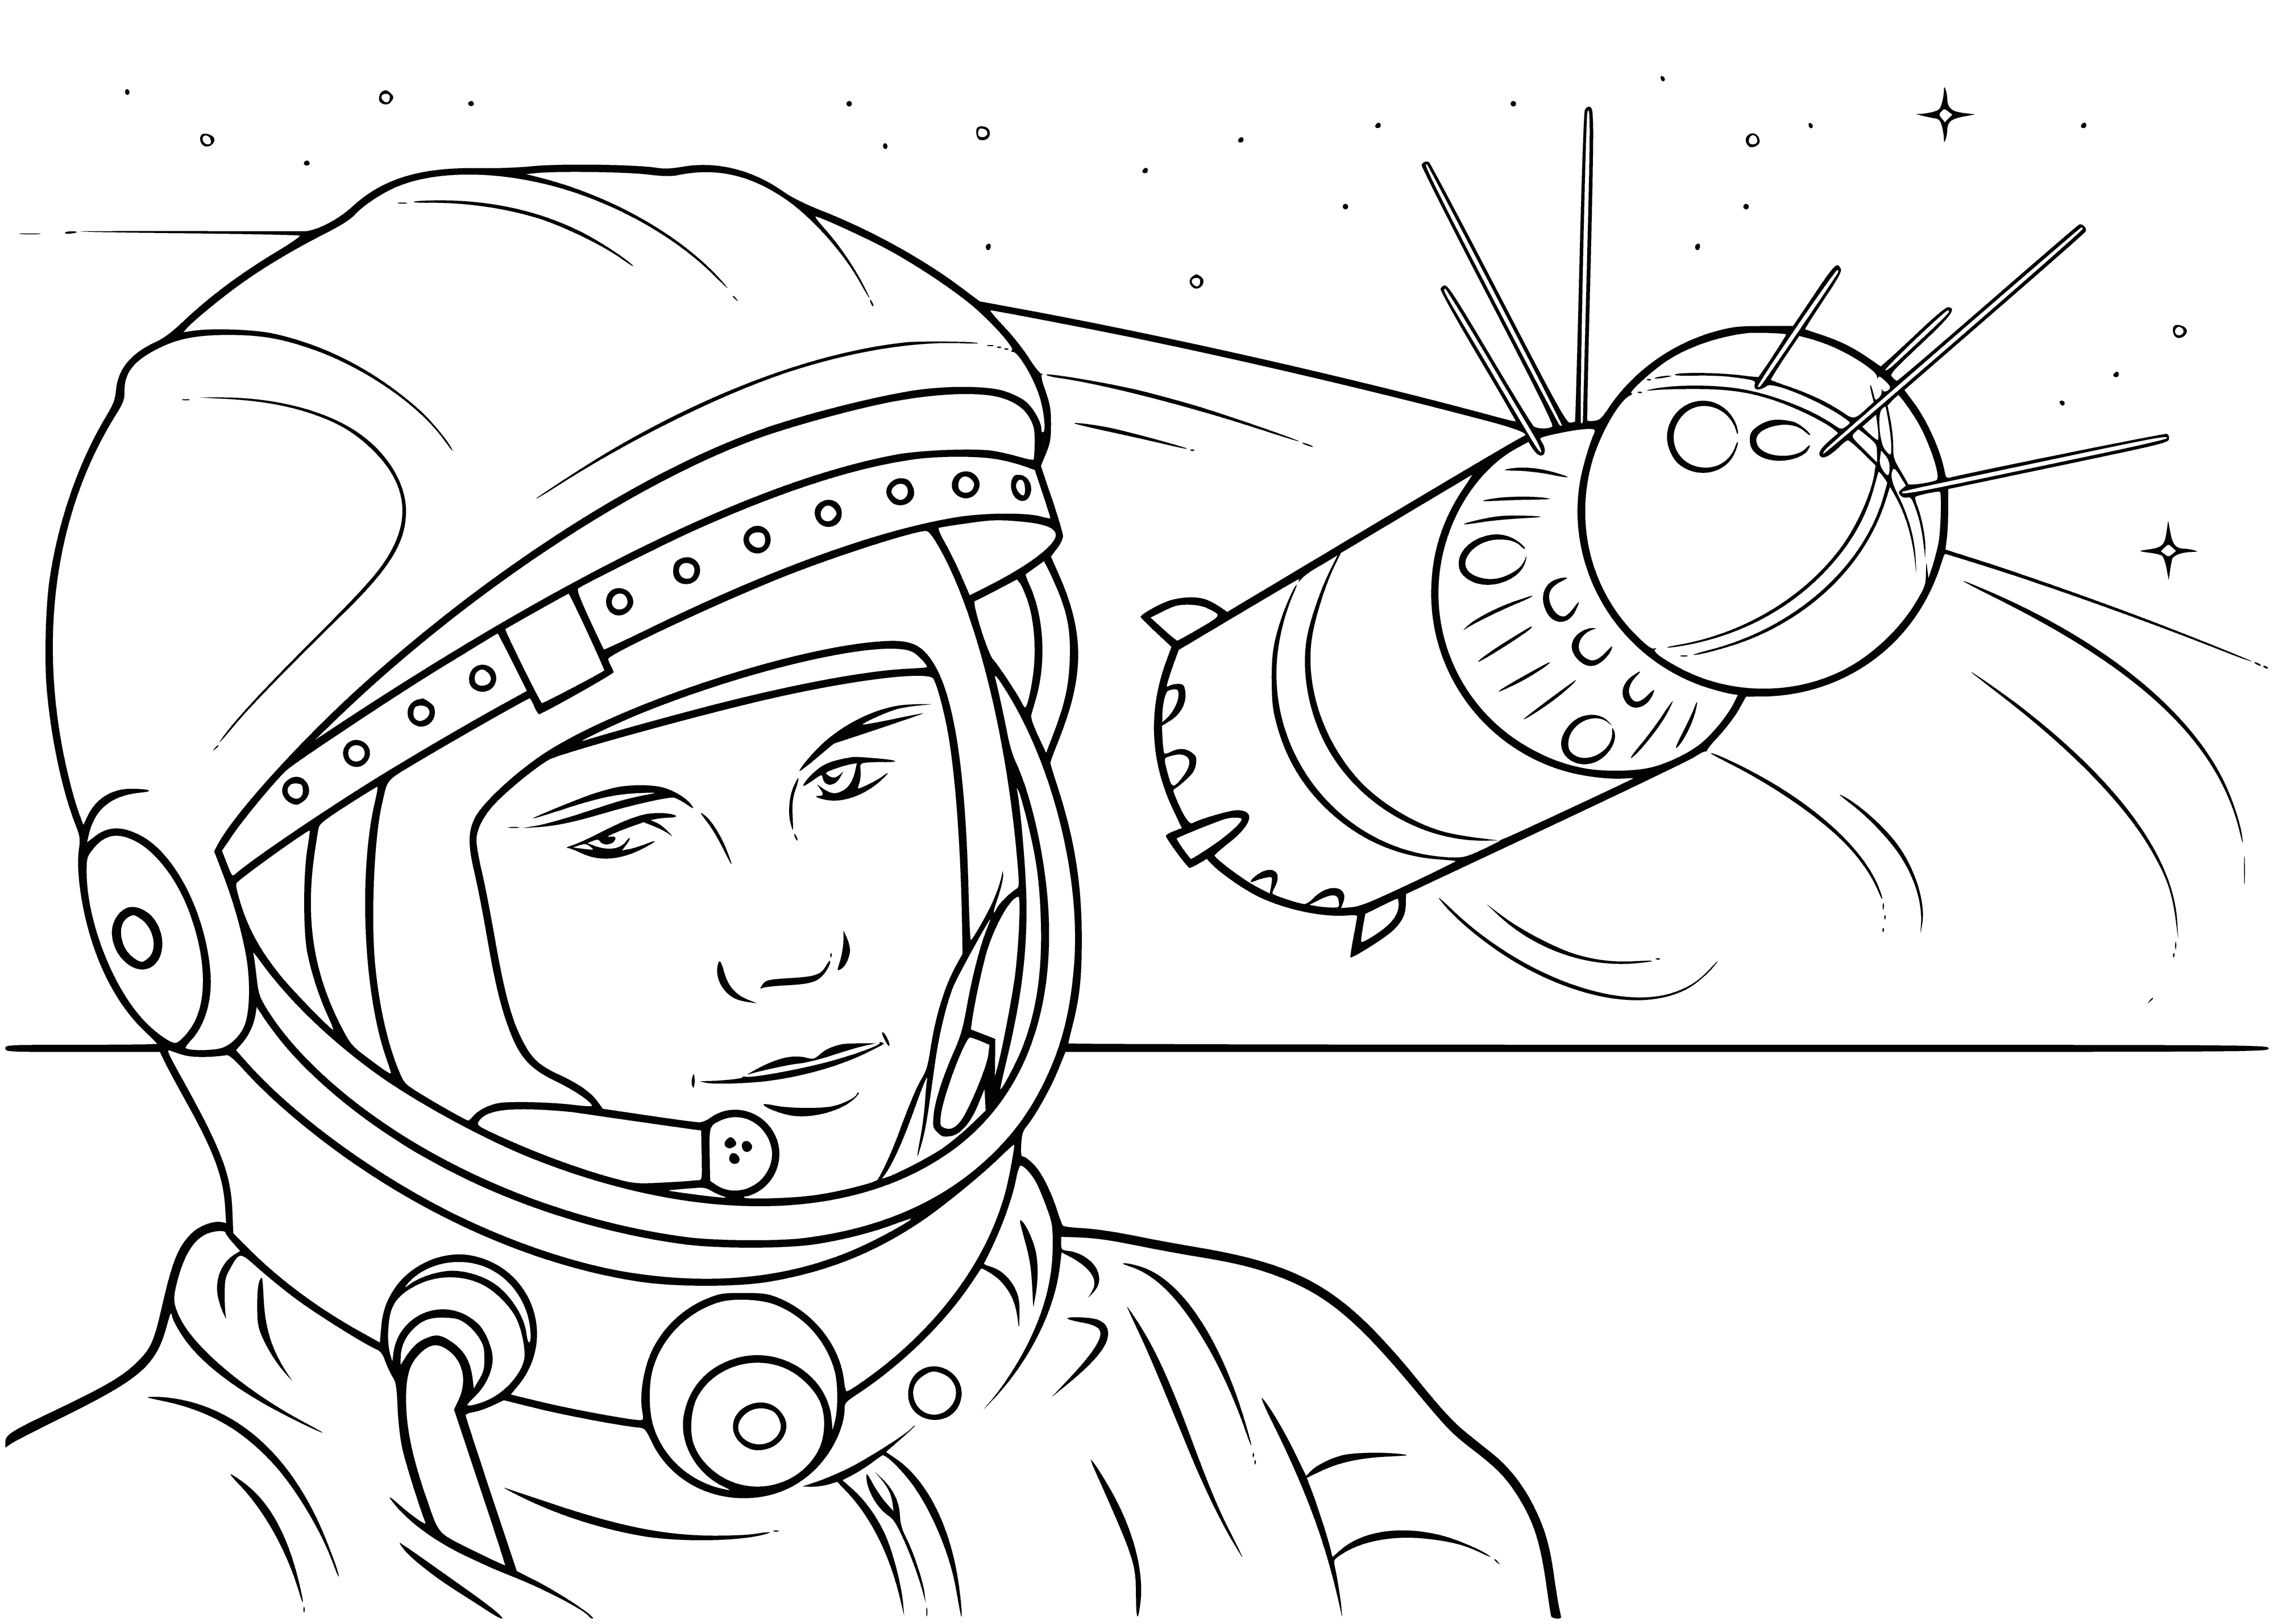 Yuri Gagarin coloring page